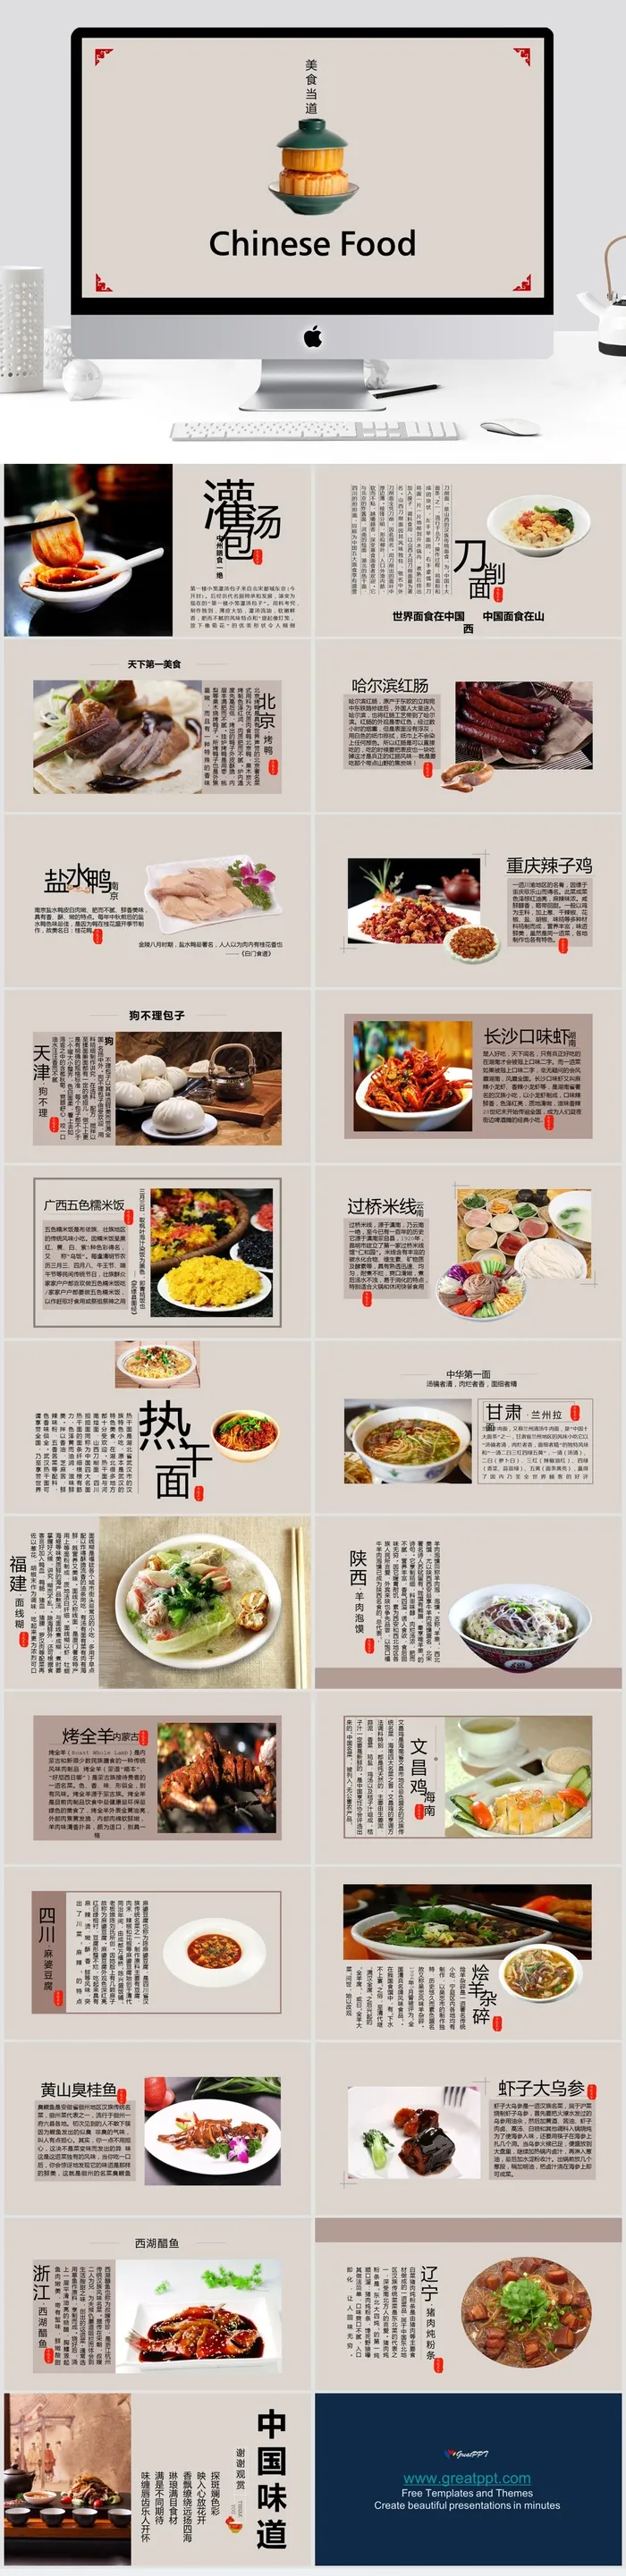 中国食物英文PPT模板